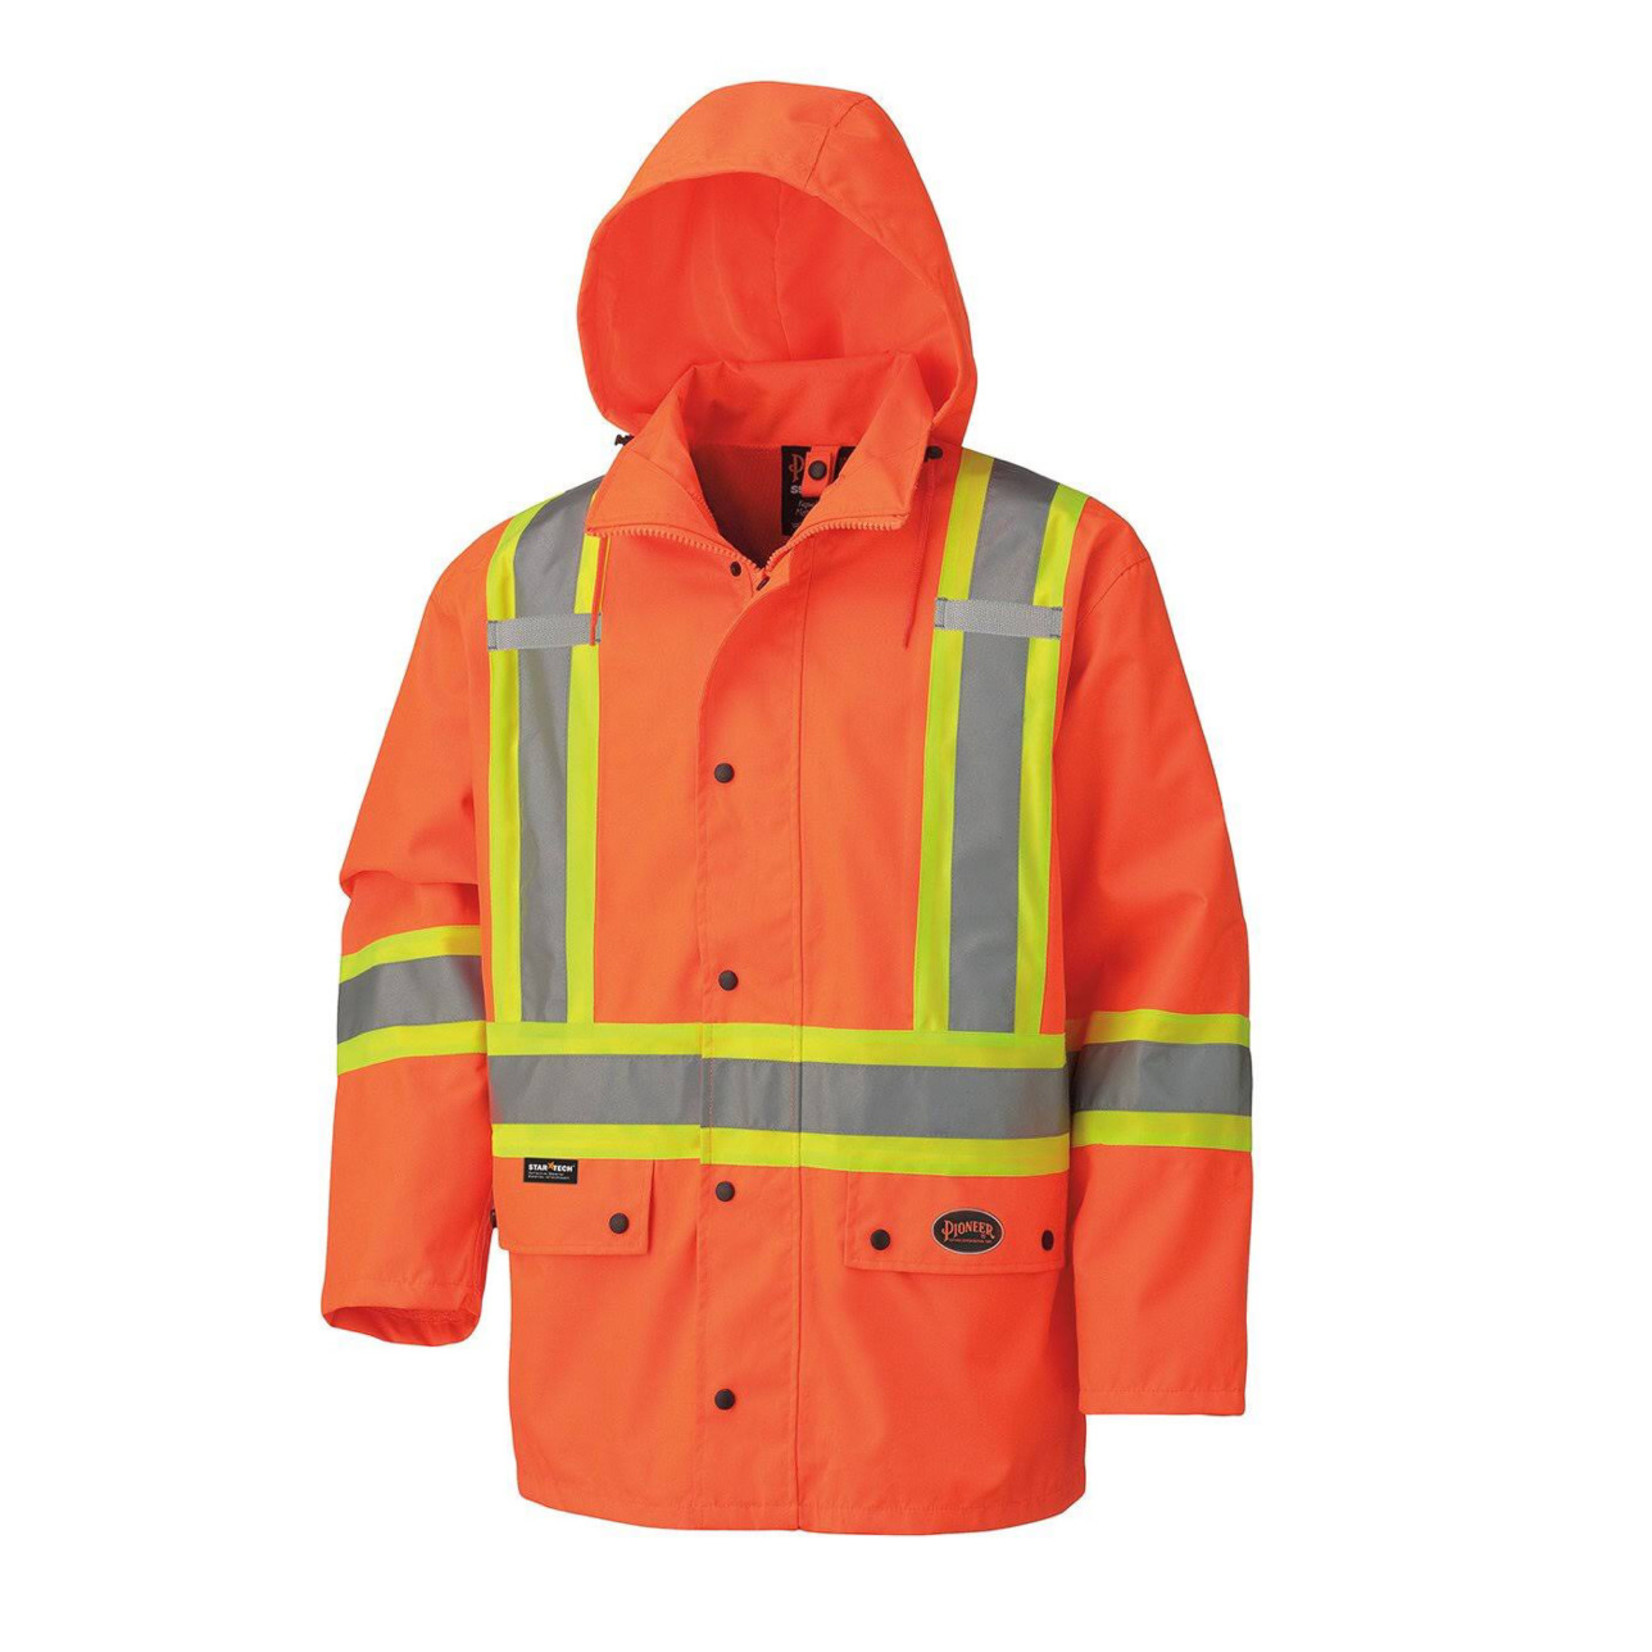 Pioneer Pioneer 100% Waterproof Hi-Vis Safety Jacket Orange 5575